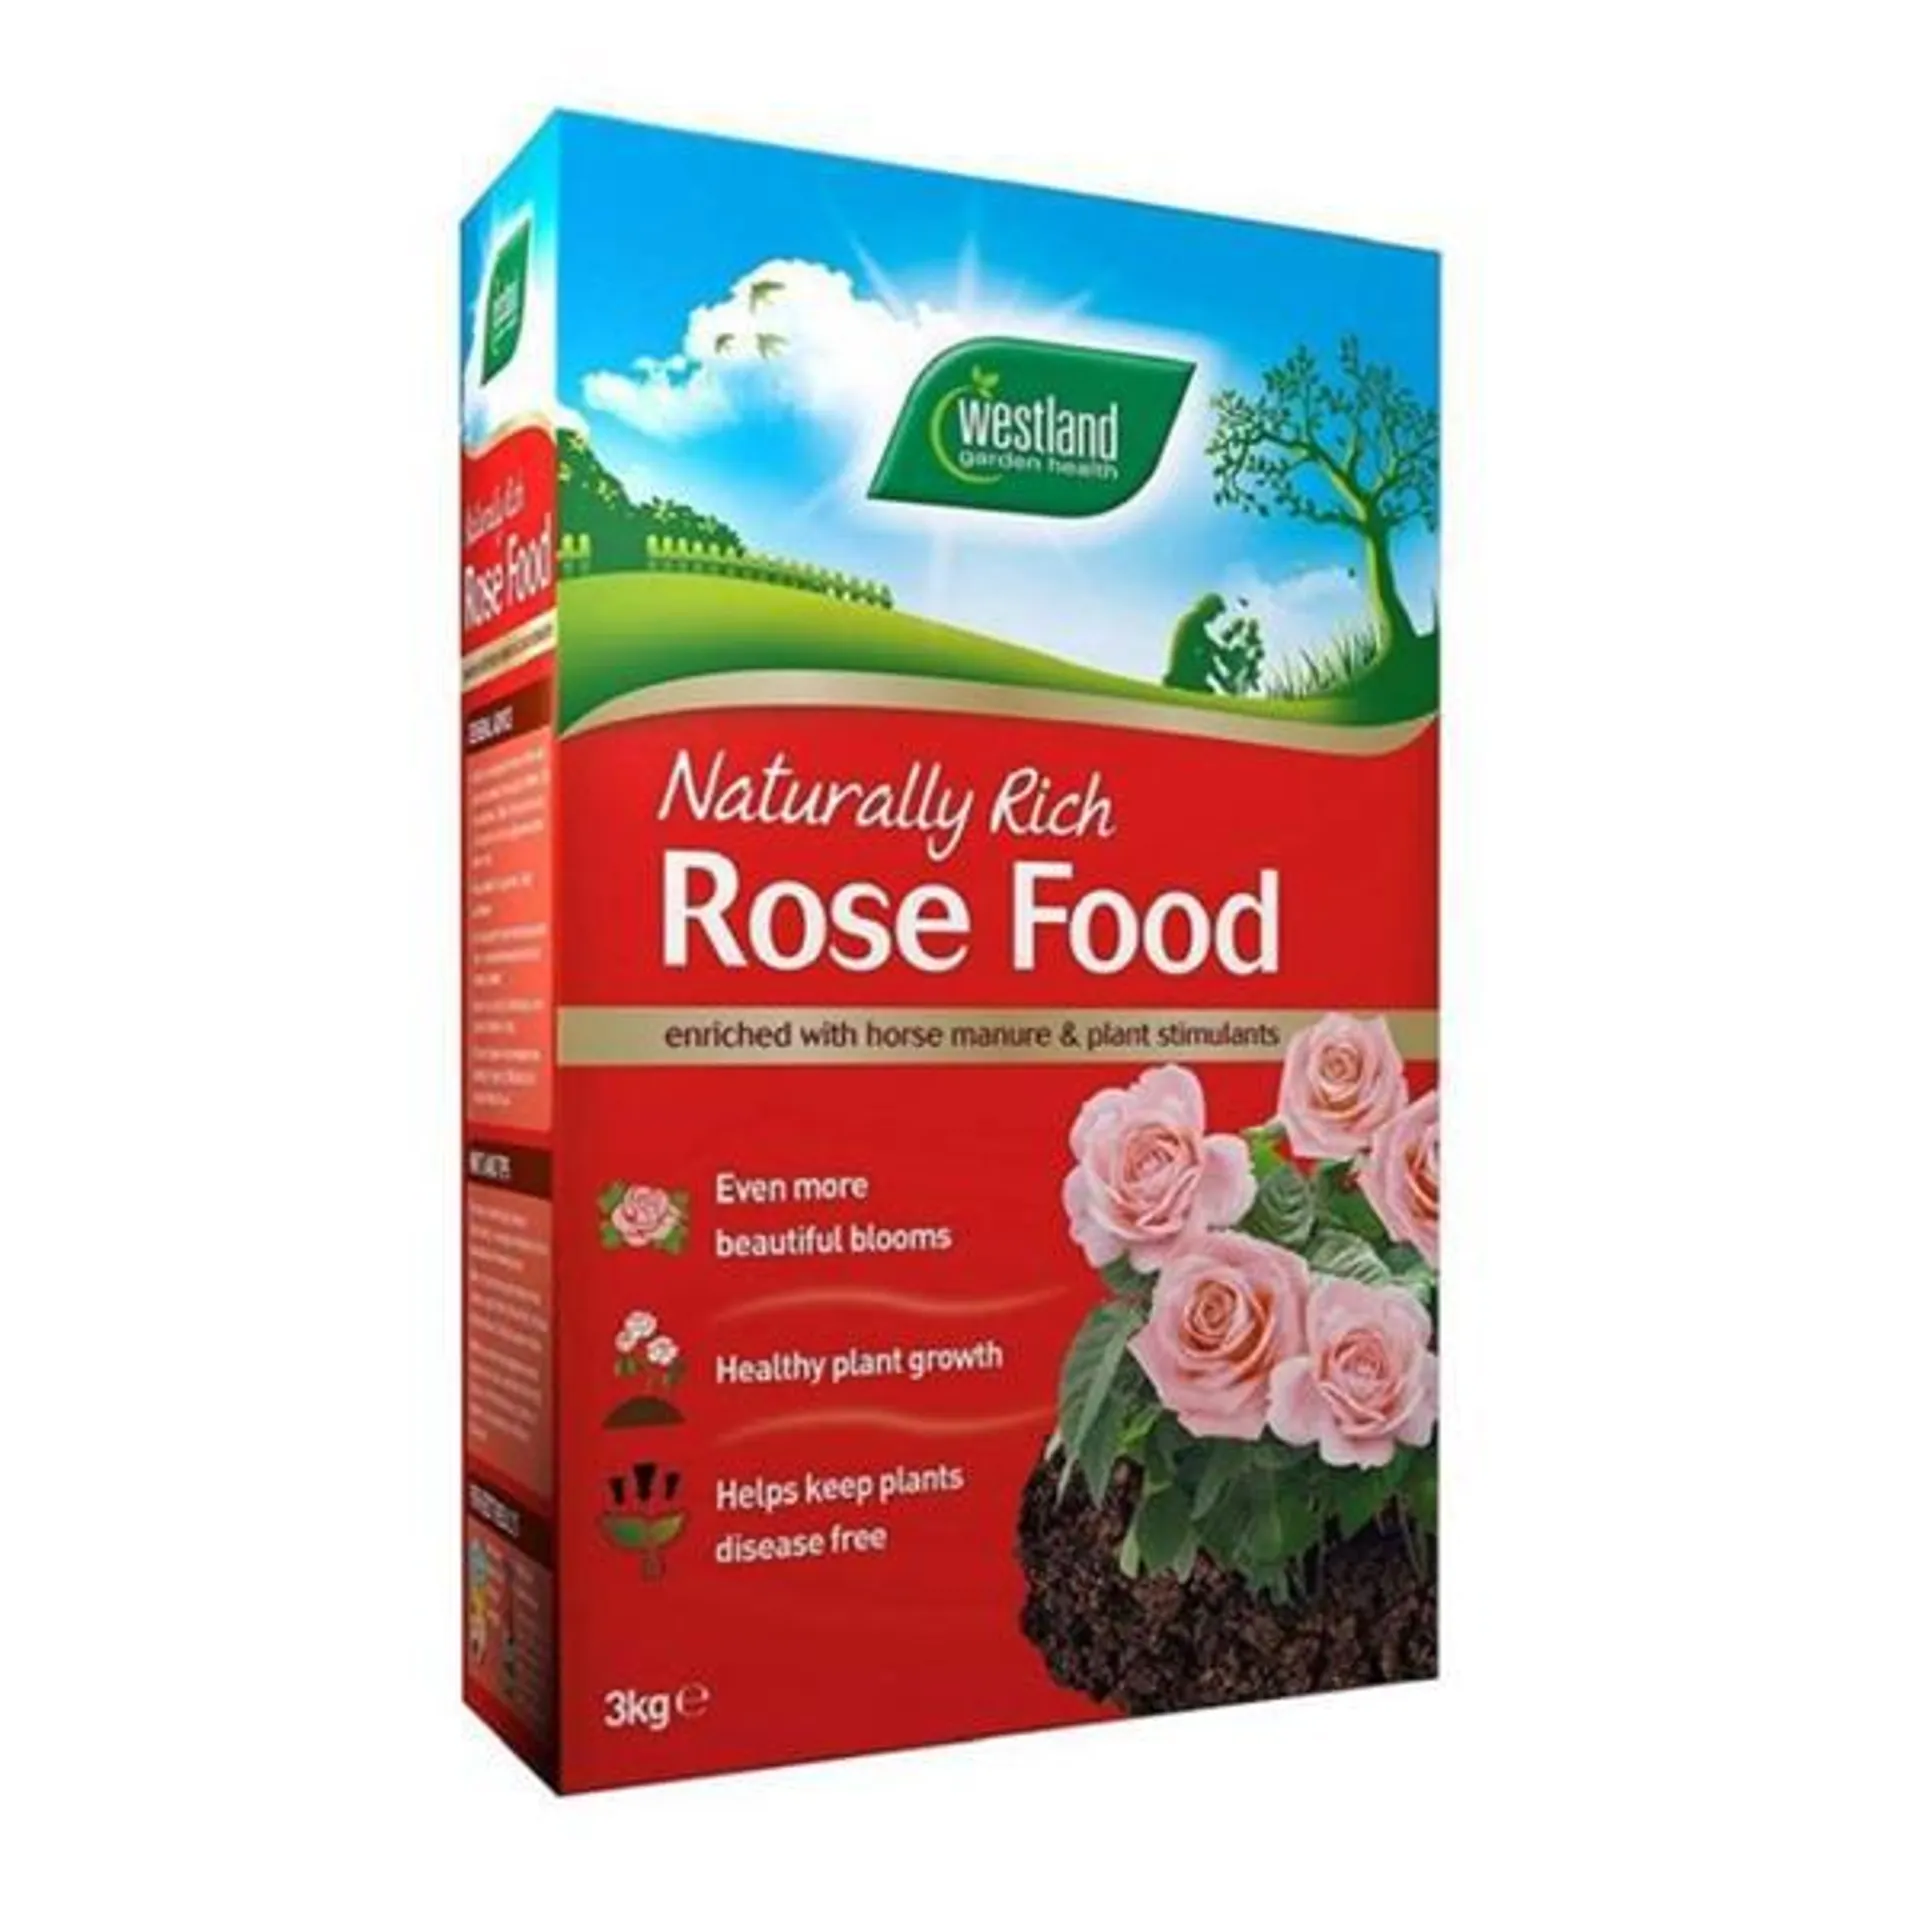 Rose Food Enriched Horse Manure 1Kg